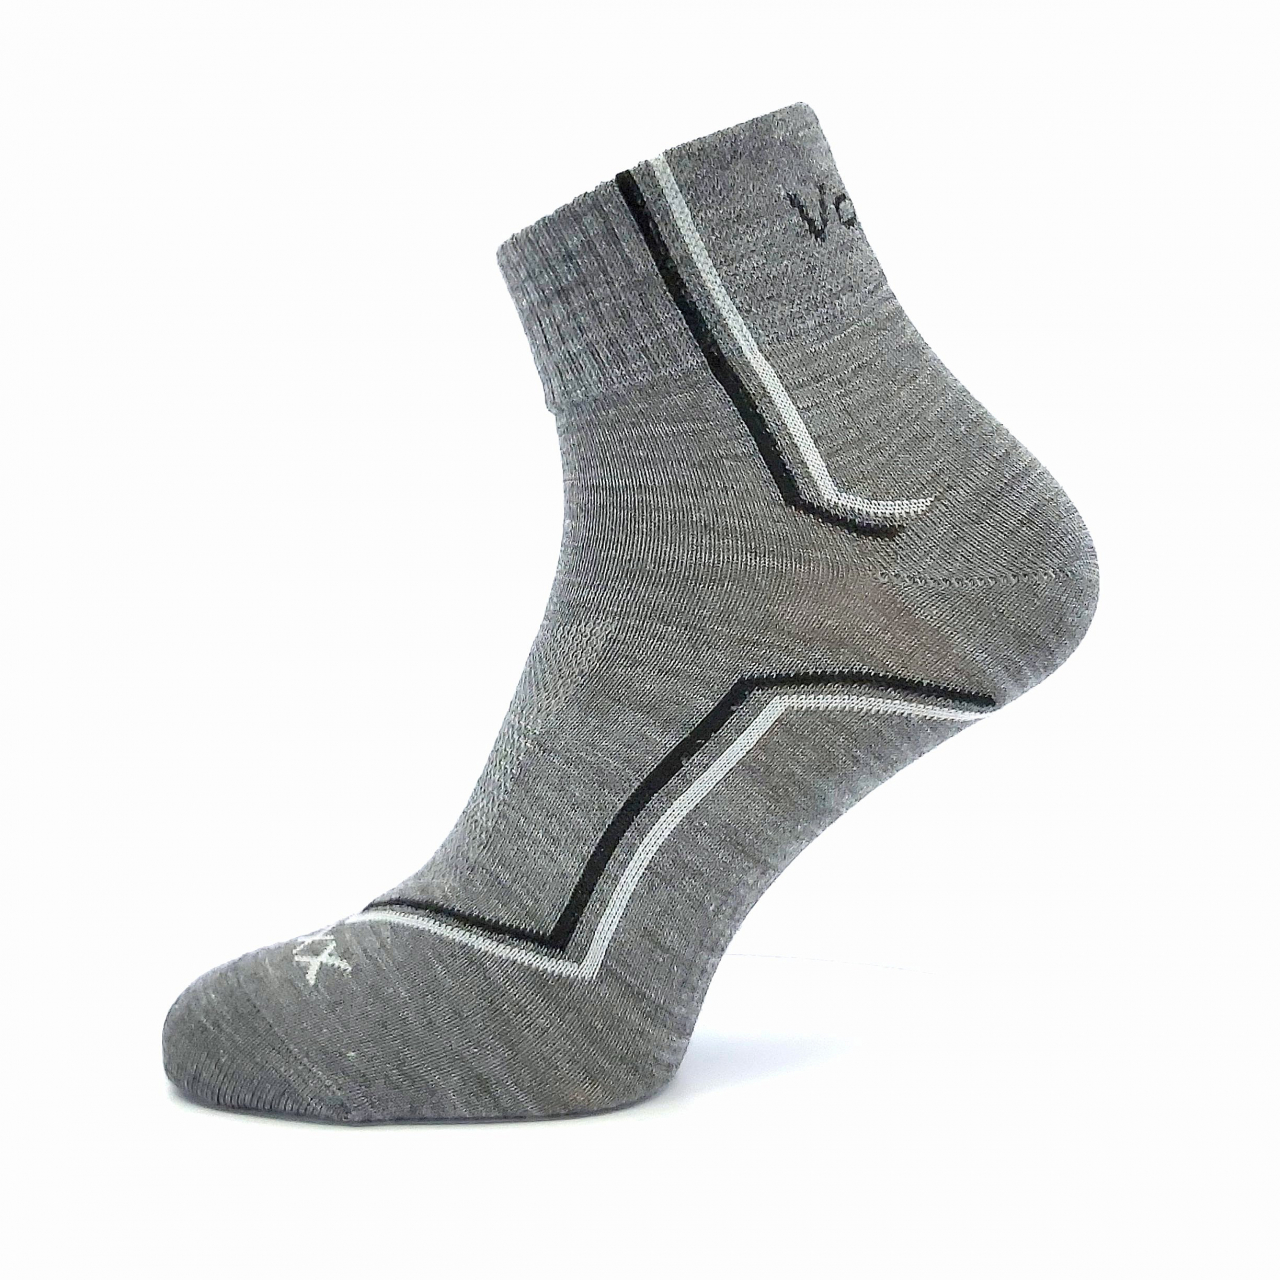 Ponožky sportovní Voxx Kroton silproX - světle šedé, 43-46